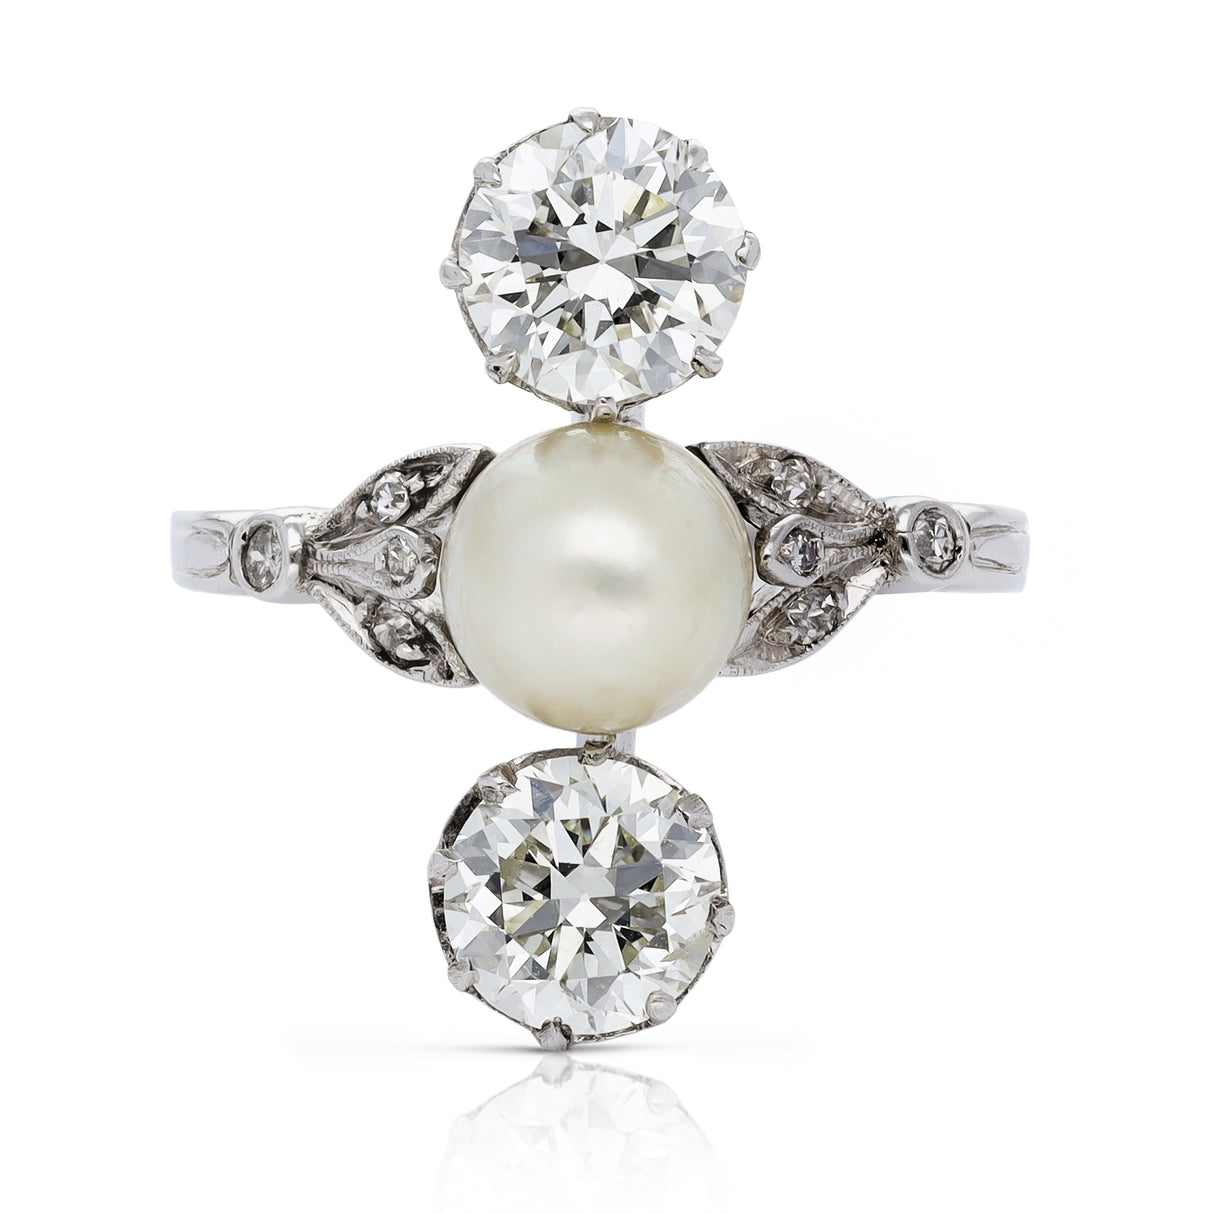 Antique natural pearl & diamond ring, platinum